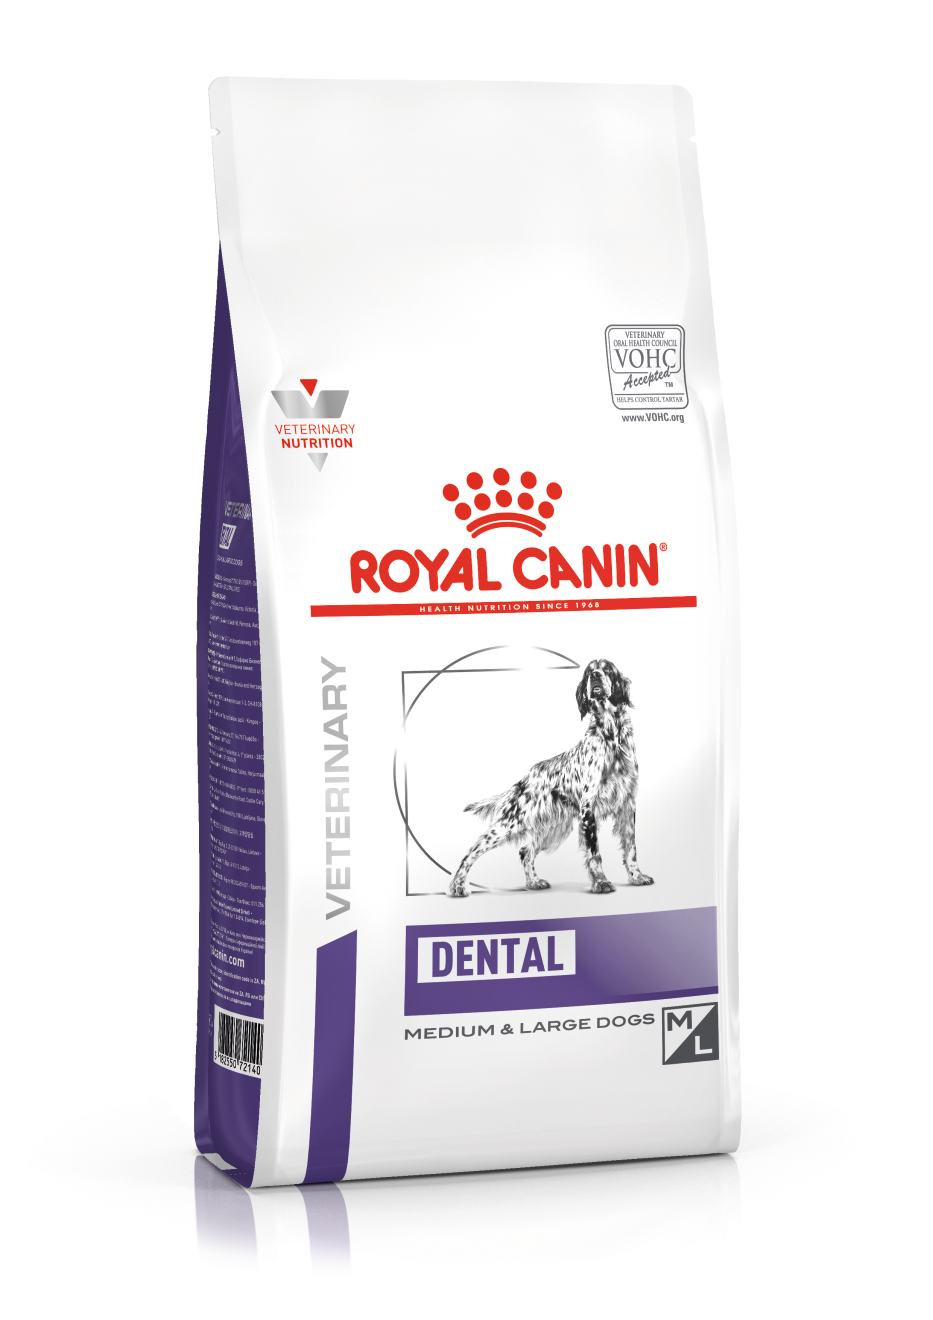 Royal Canin Dental hond 1 x 13 kg